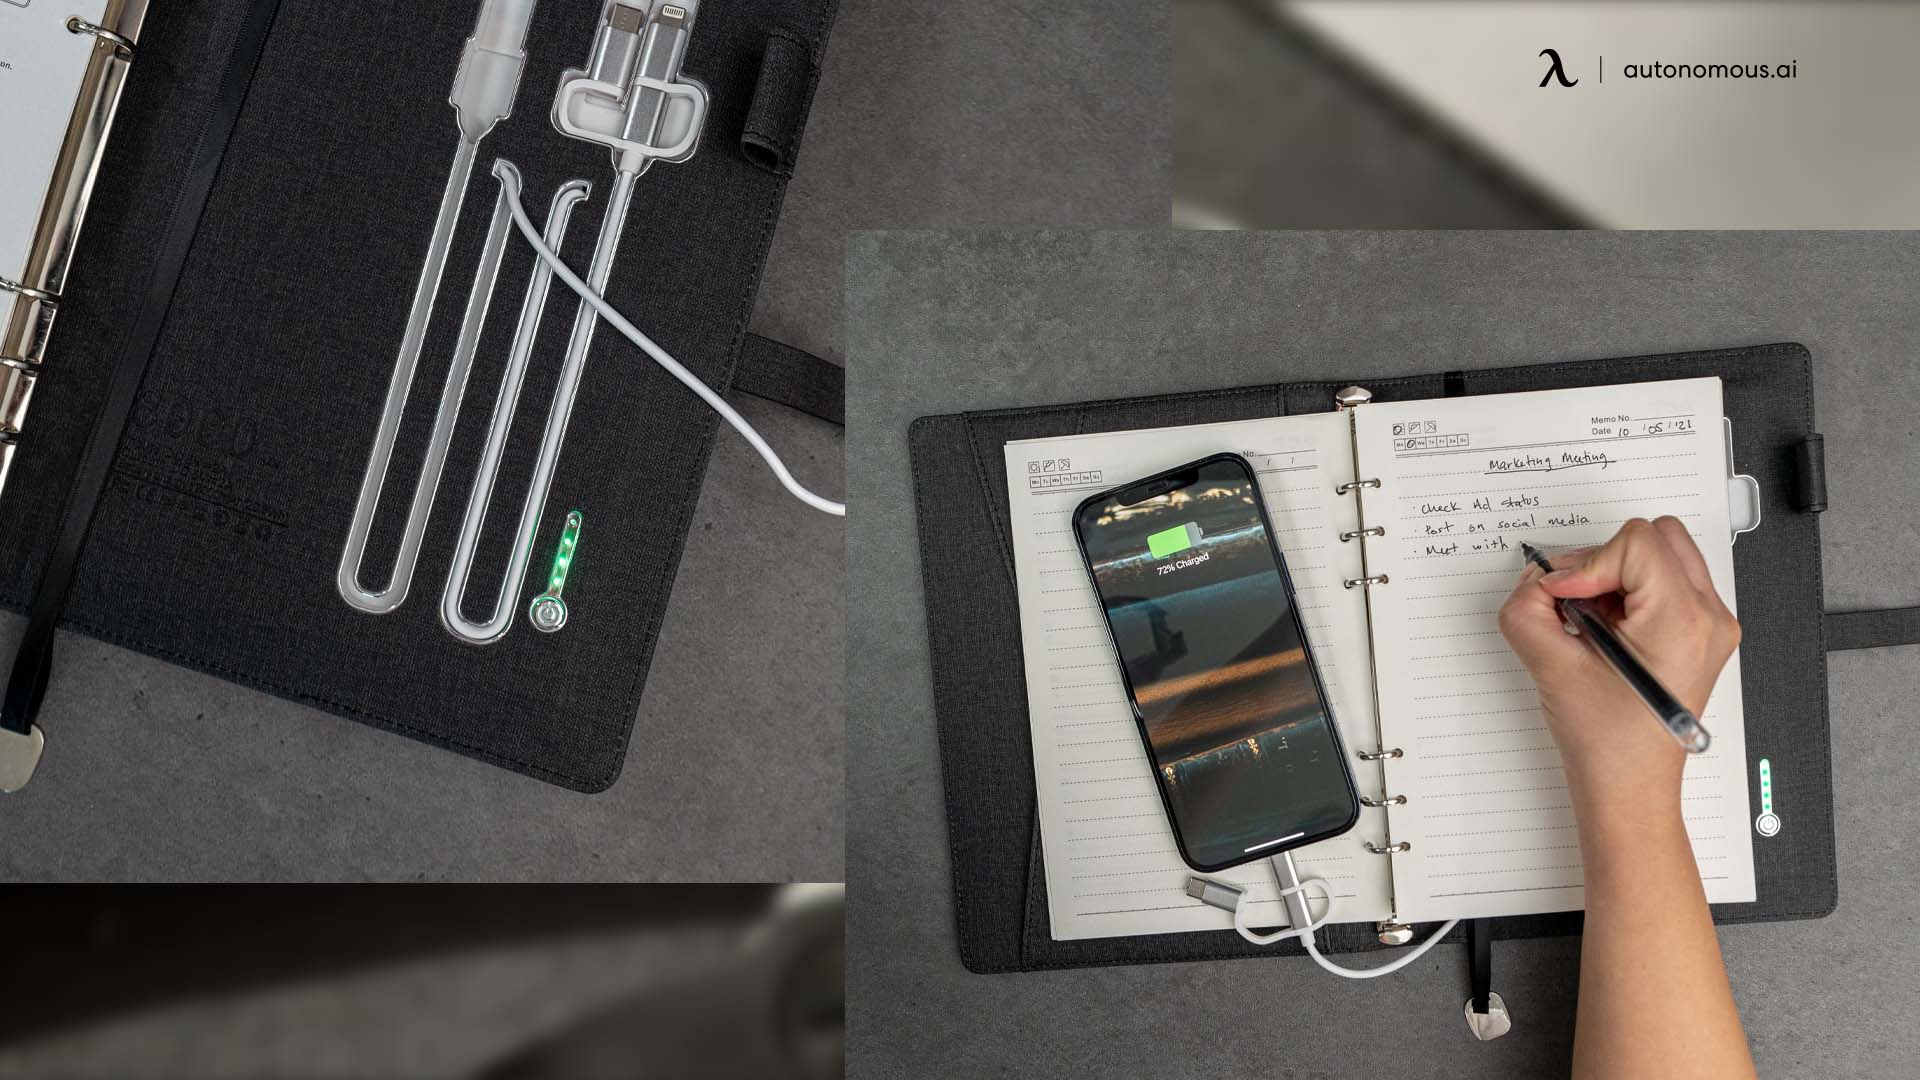 2 ChargeBook Notebook Organizer.jpg	